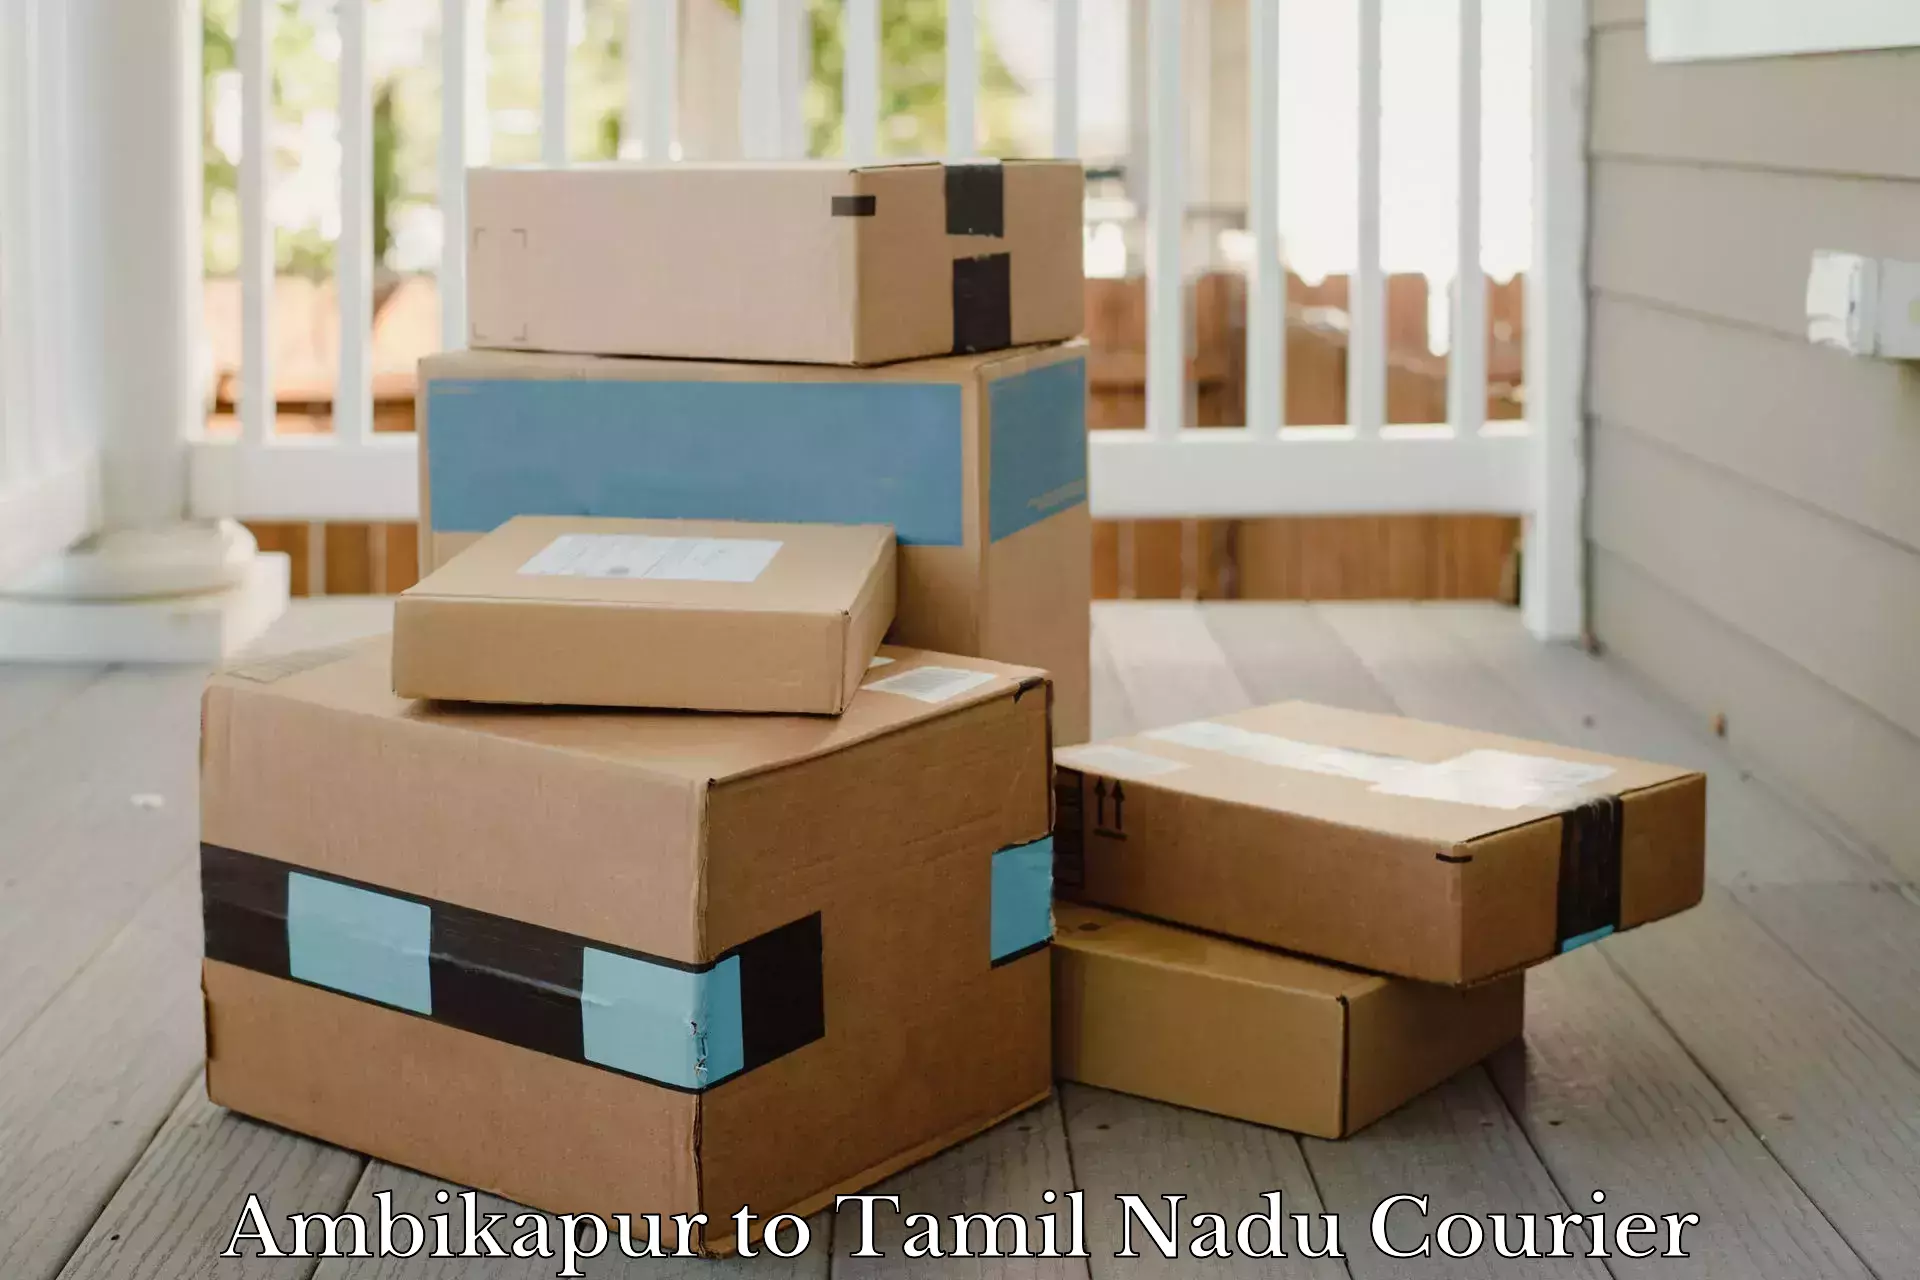 Flexible parcel services Ambikapur to Eraiyur